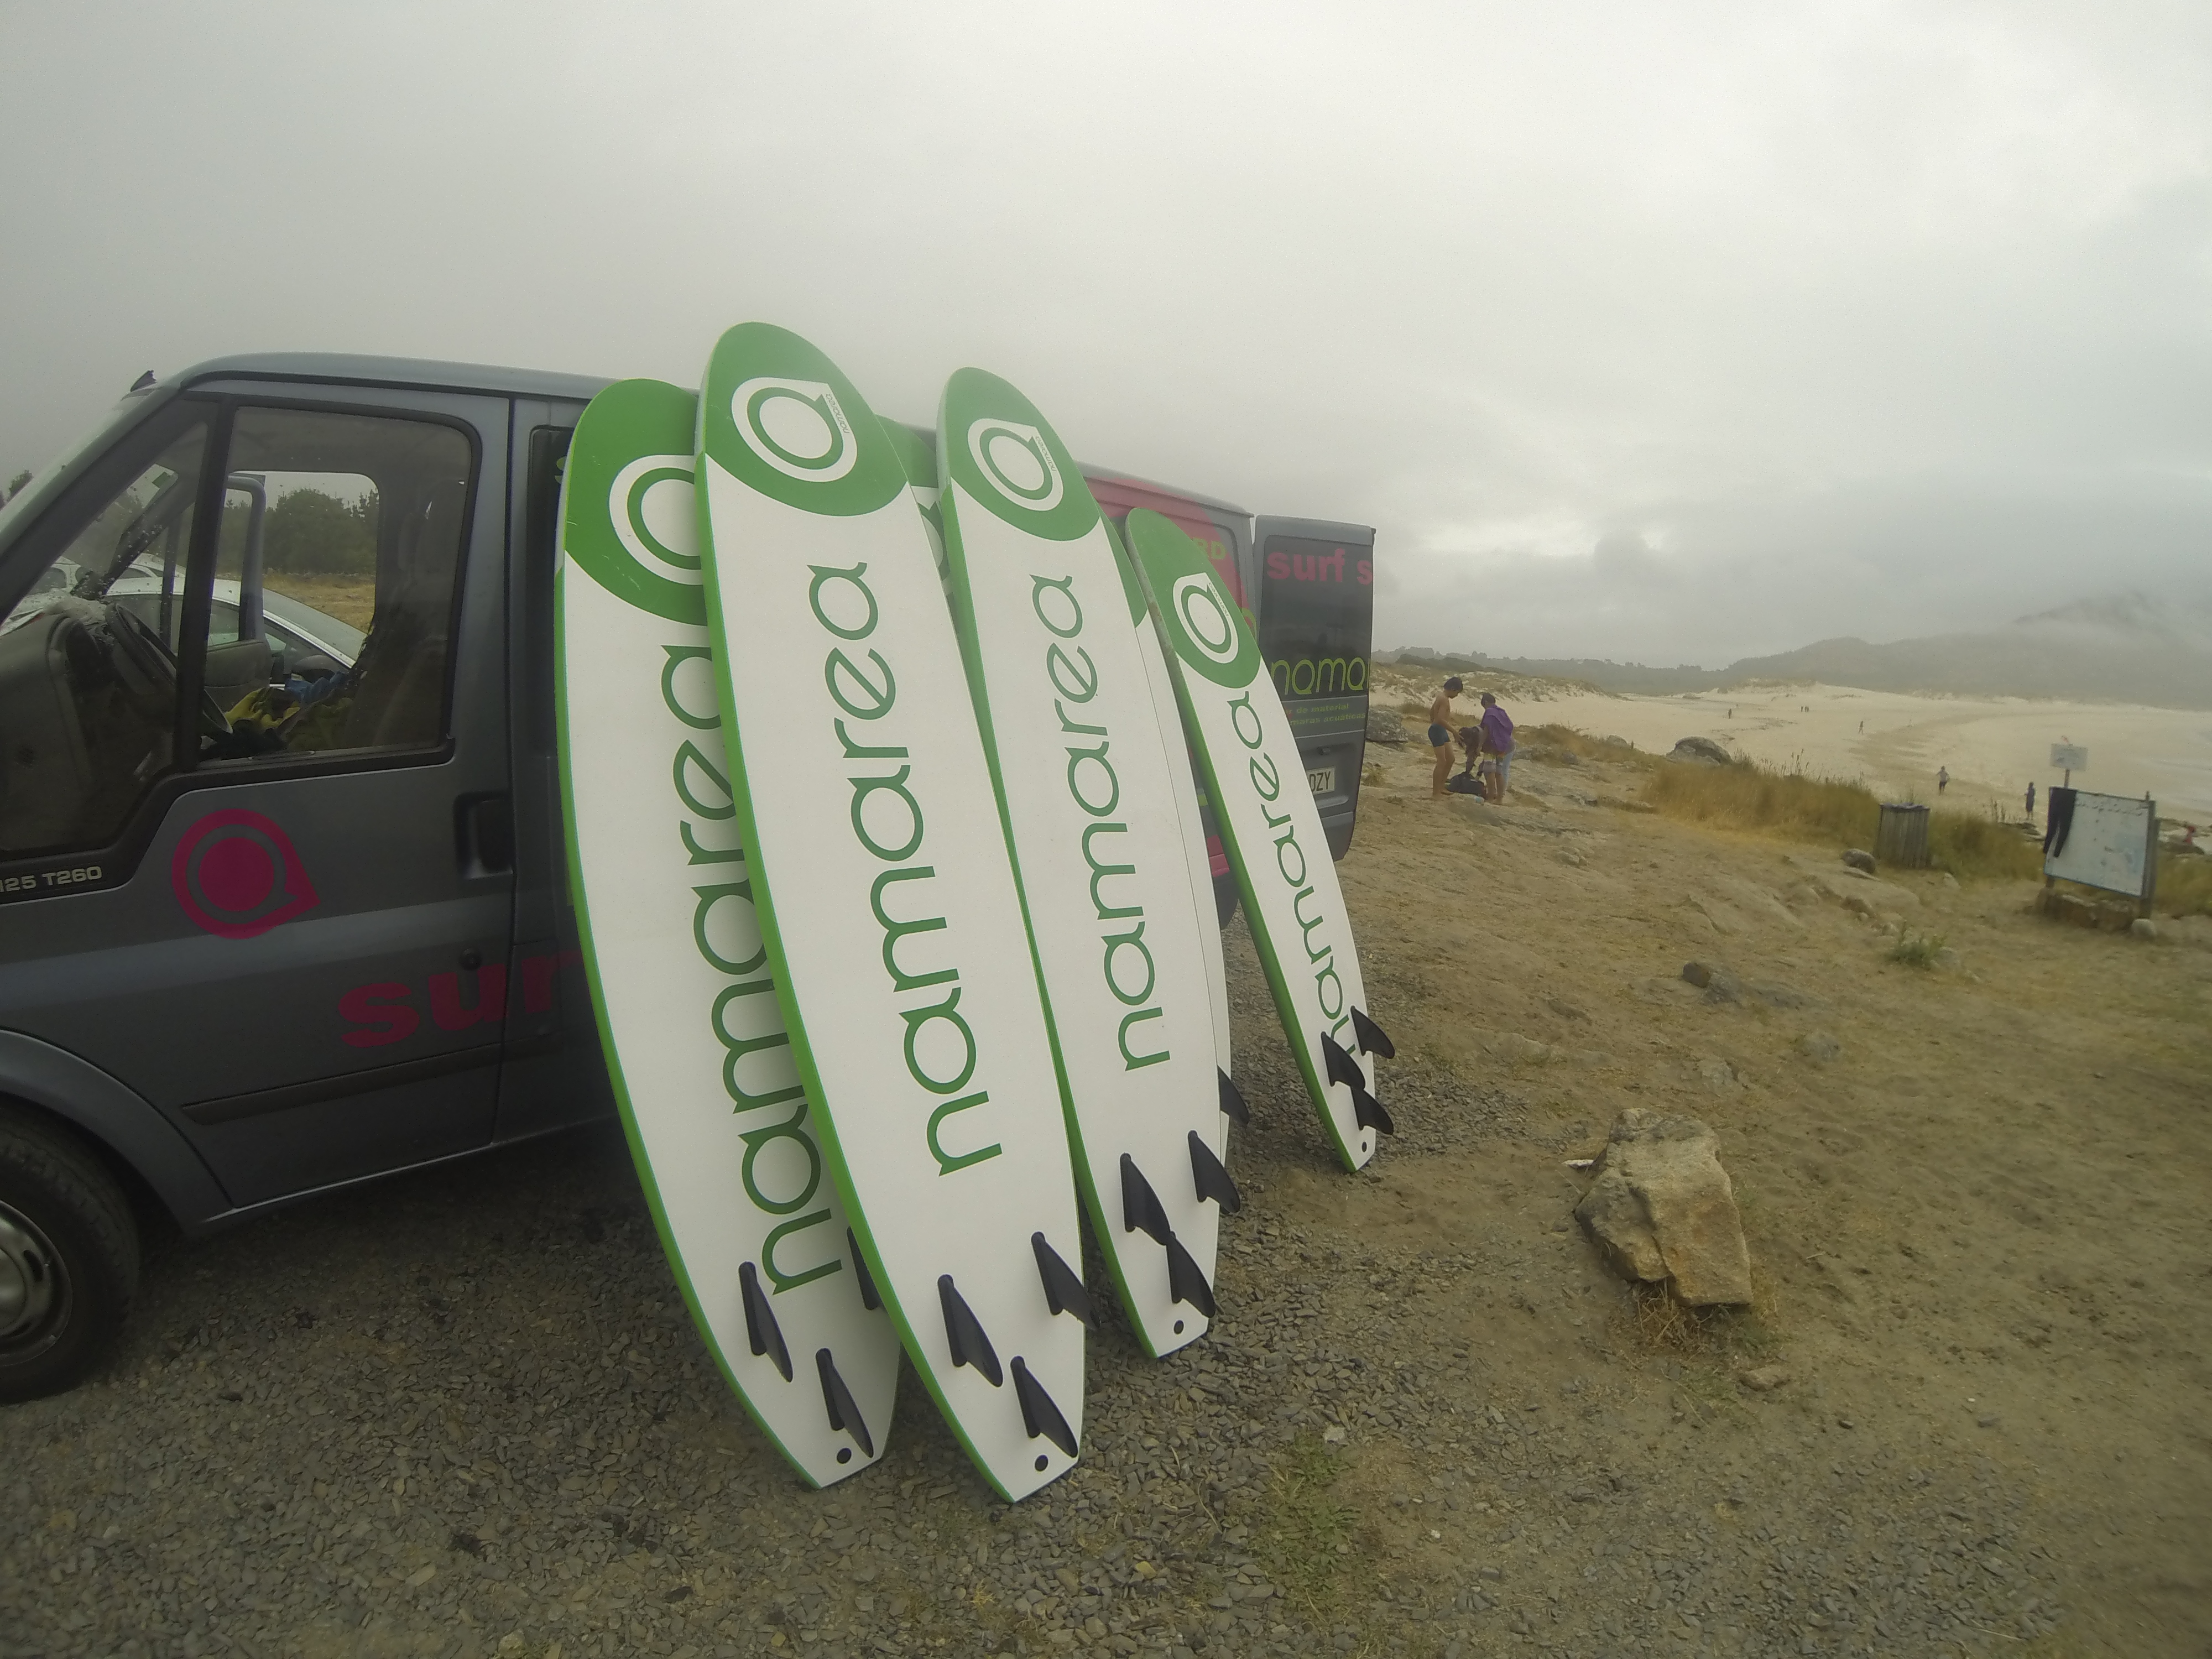 Tablas de surf apoyadas en la furgoneta de Namarea